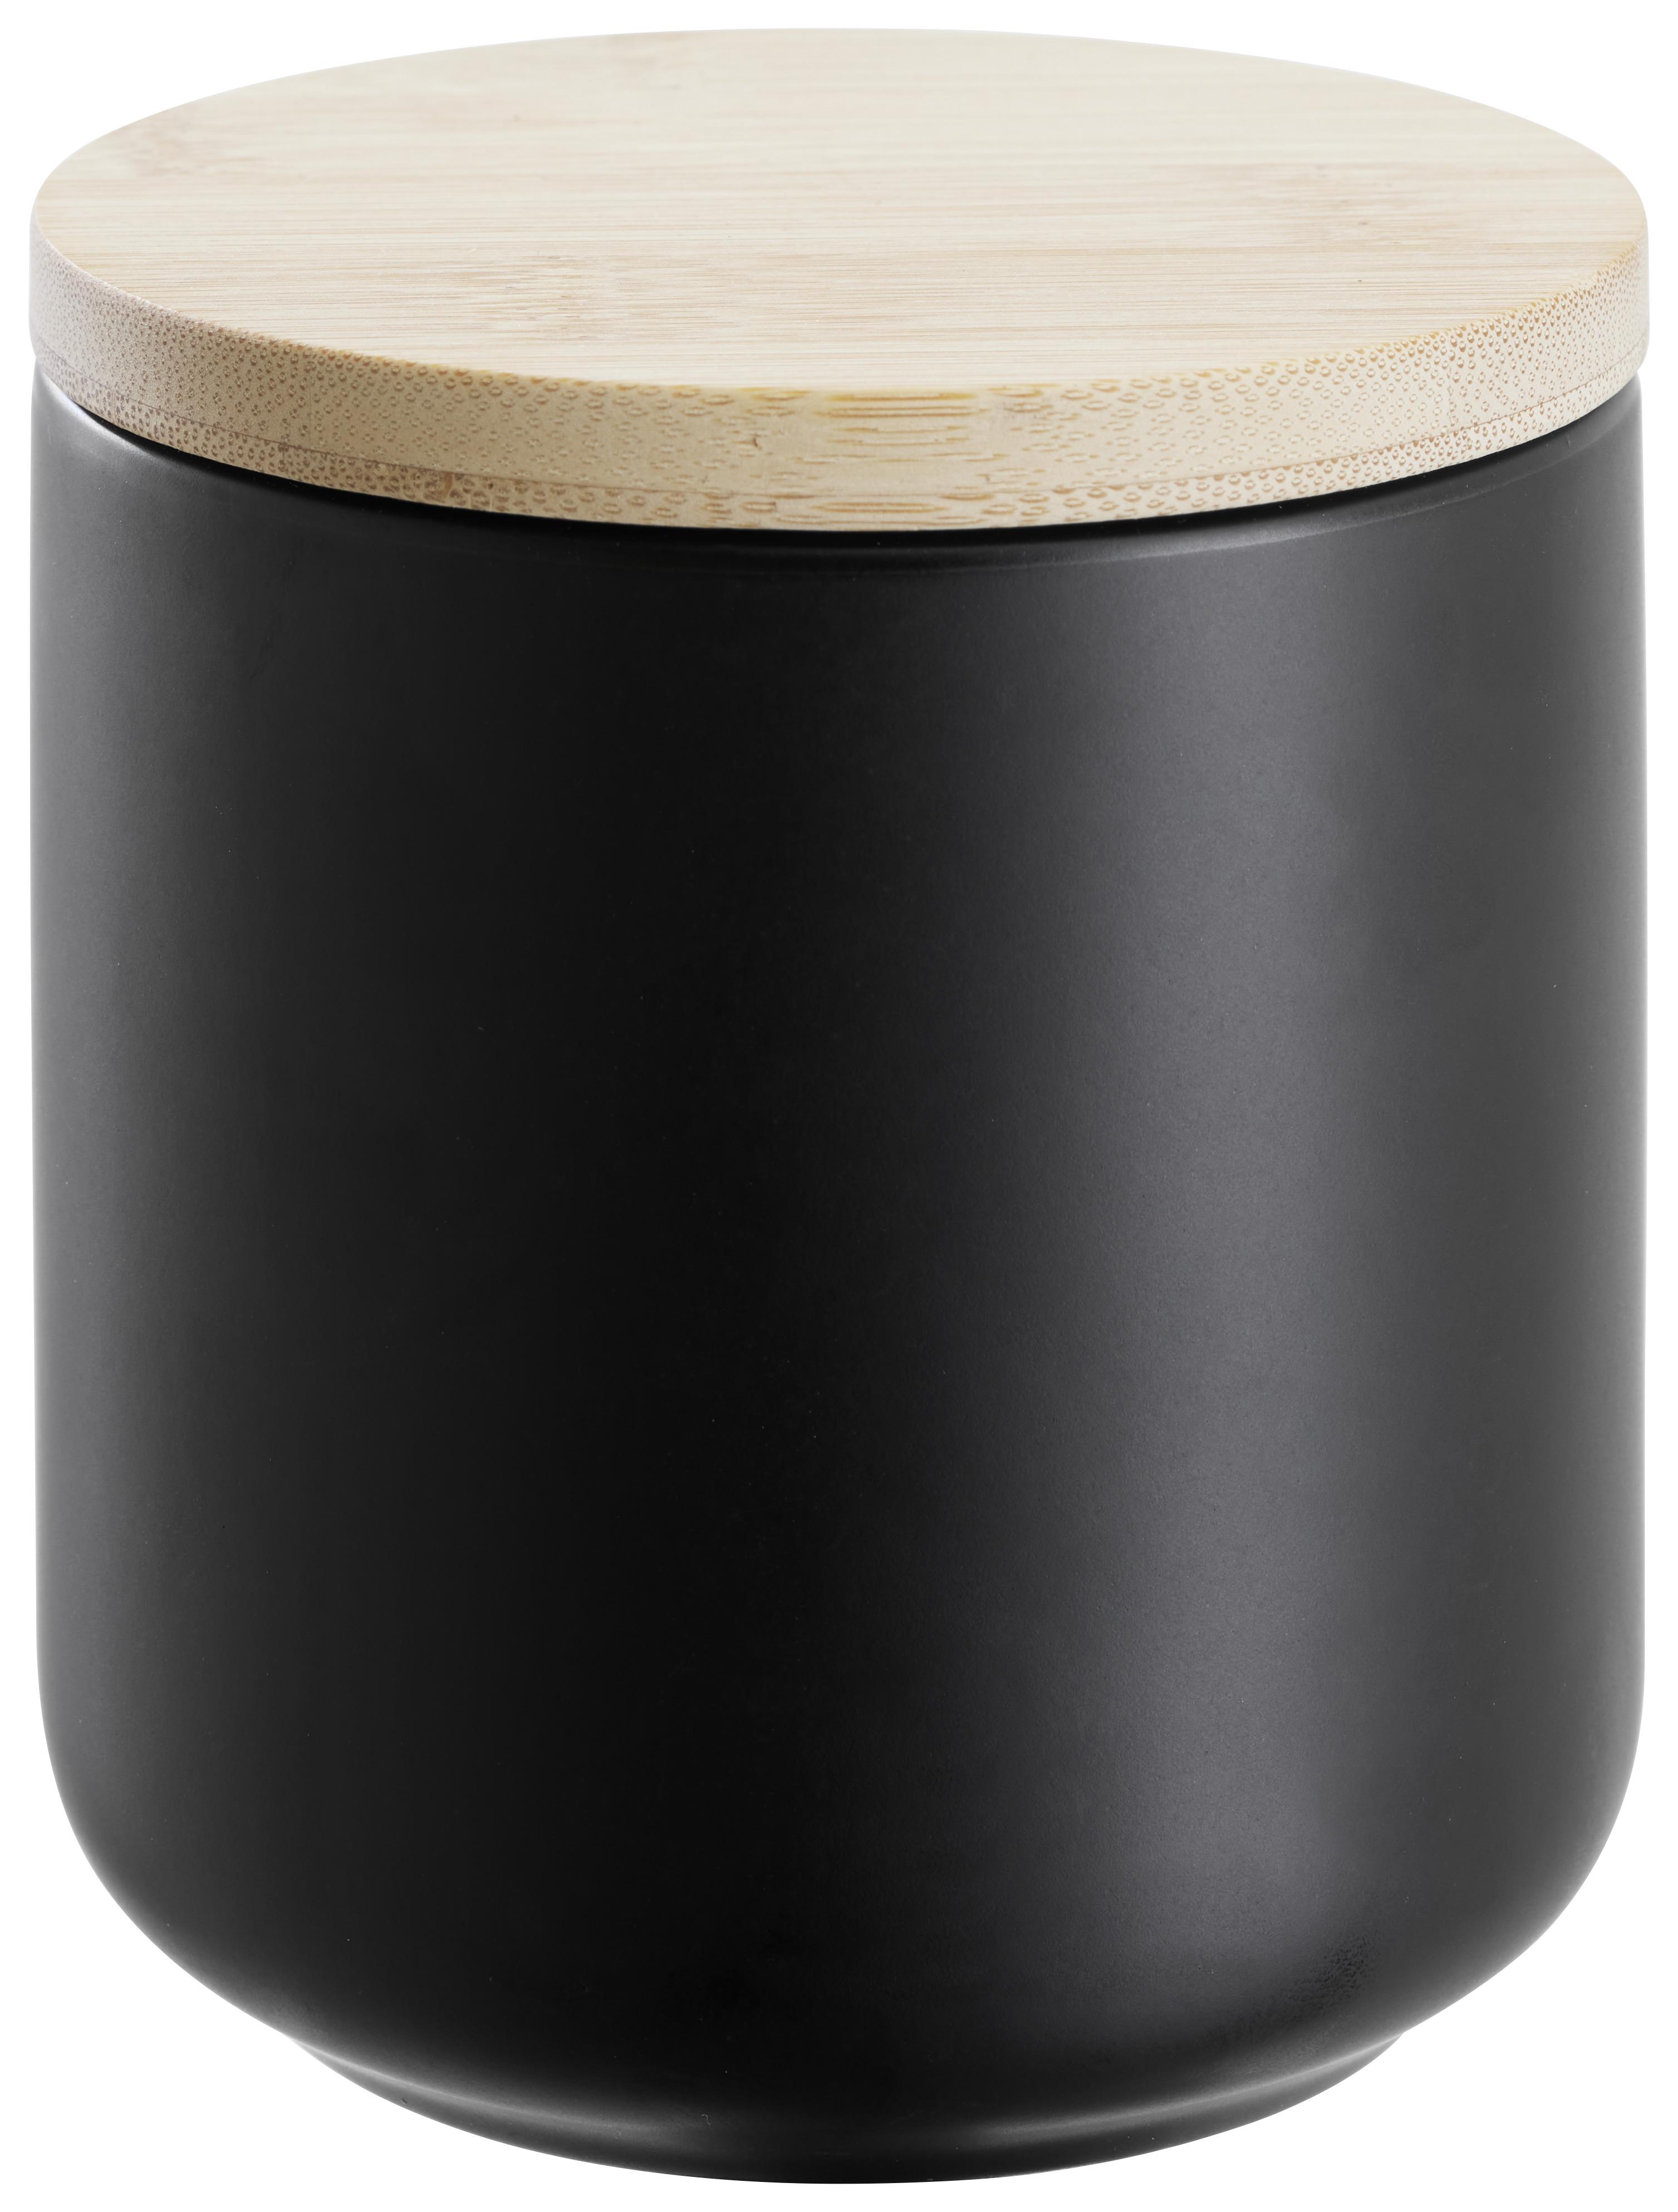 Dóza Na Potraviny Svea - 0,5l - černá/přírodní barvy, Moderní, dřevo/keramika (10/10cm) - Premium Living